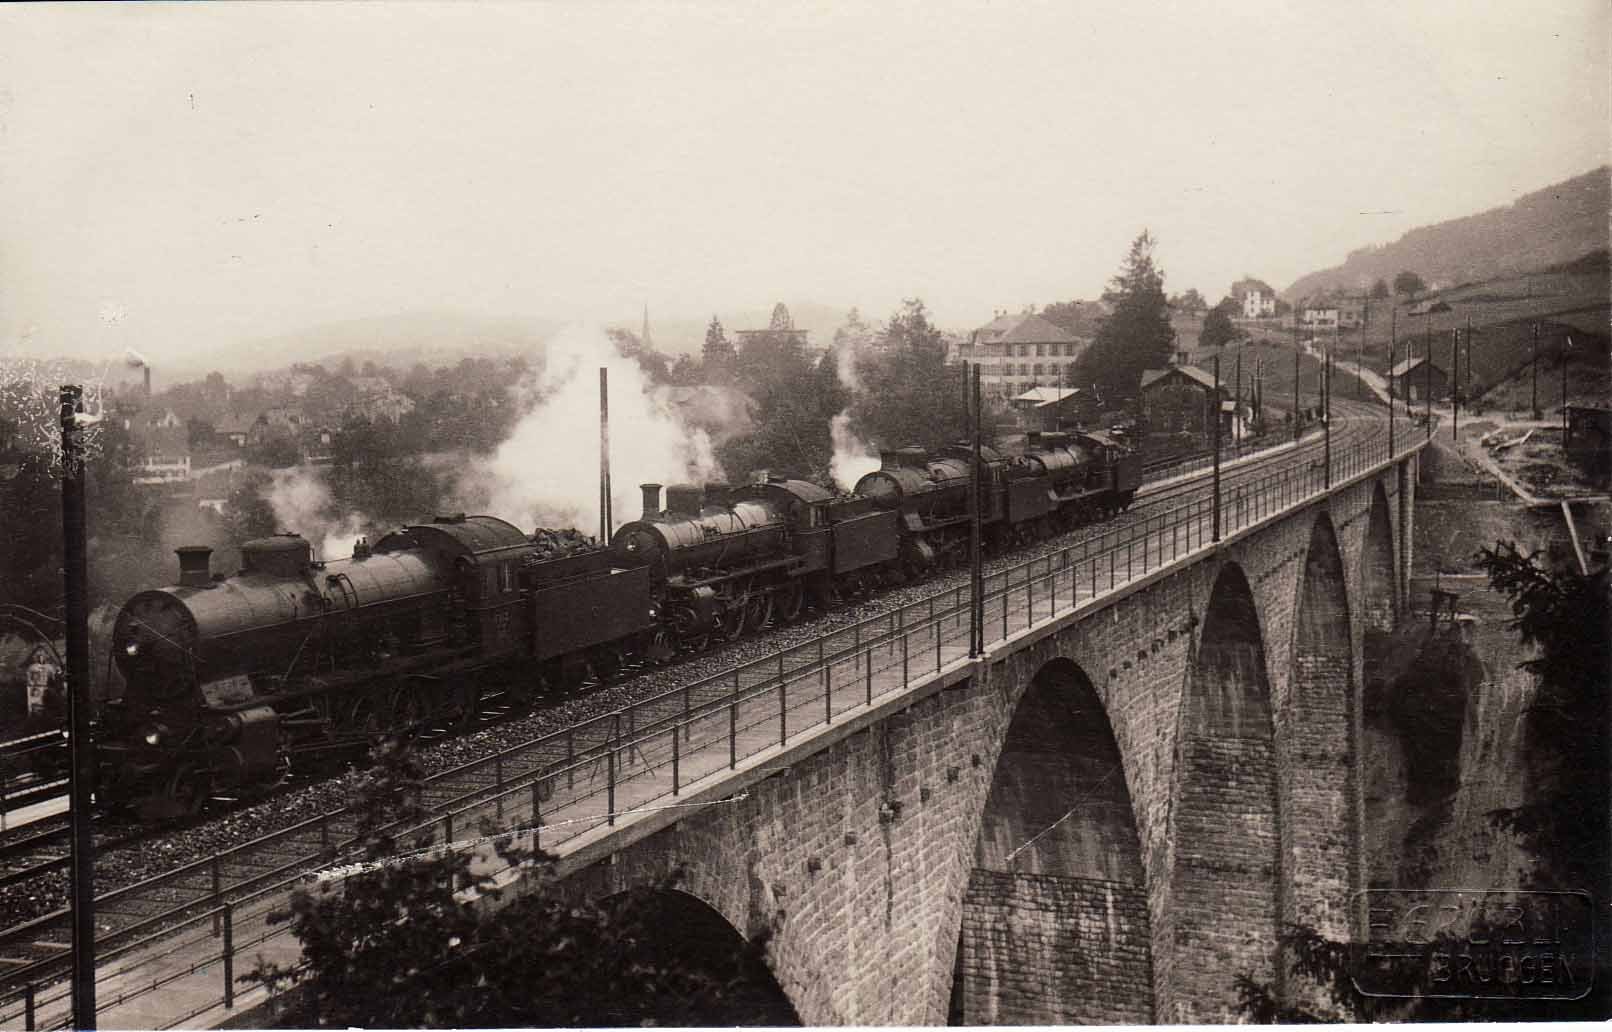 Die Förderung des Ostschweizer Eisenbahnnetzes war für die Industrie- und Handelskammer zentral: Durch gute Verbindungen konnten Handelswaren deutlich schneller befördert werden. Hier ein Bild der Belastungsprobe der Kräzern-Eisenbahnbrücke im Jahr 19